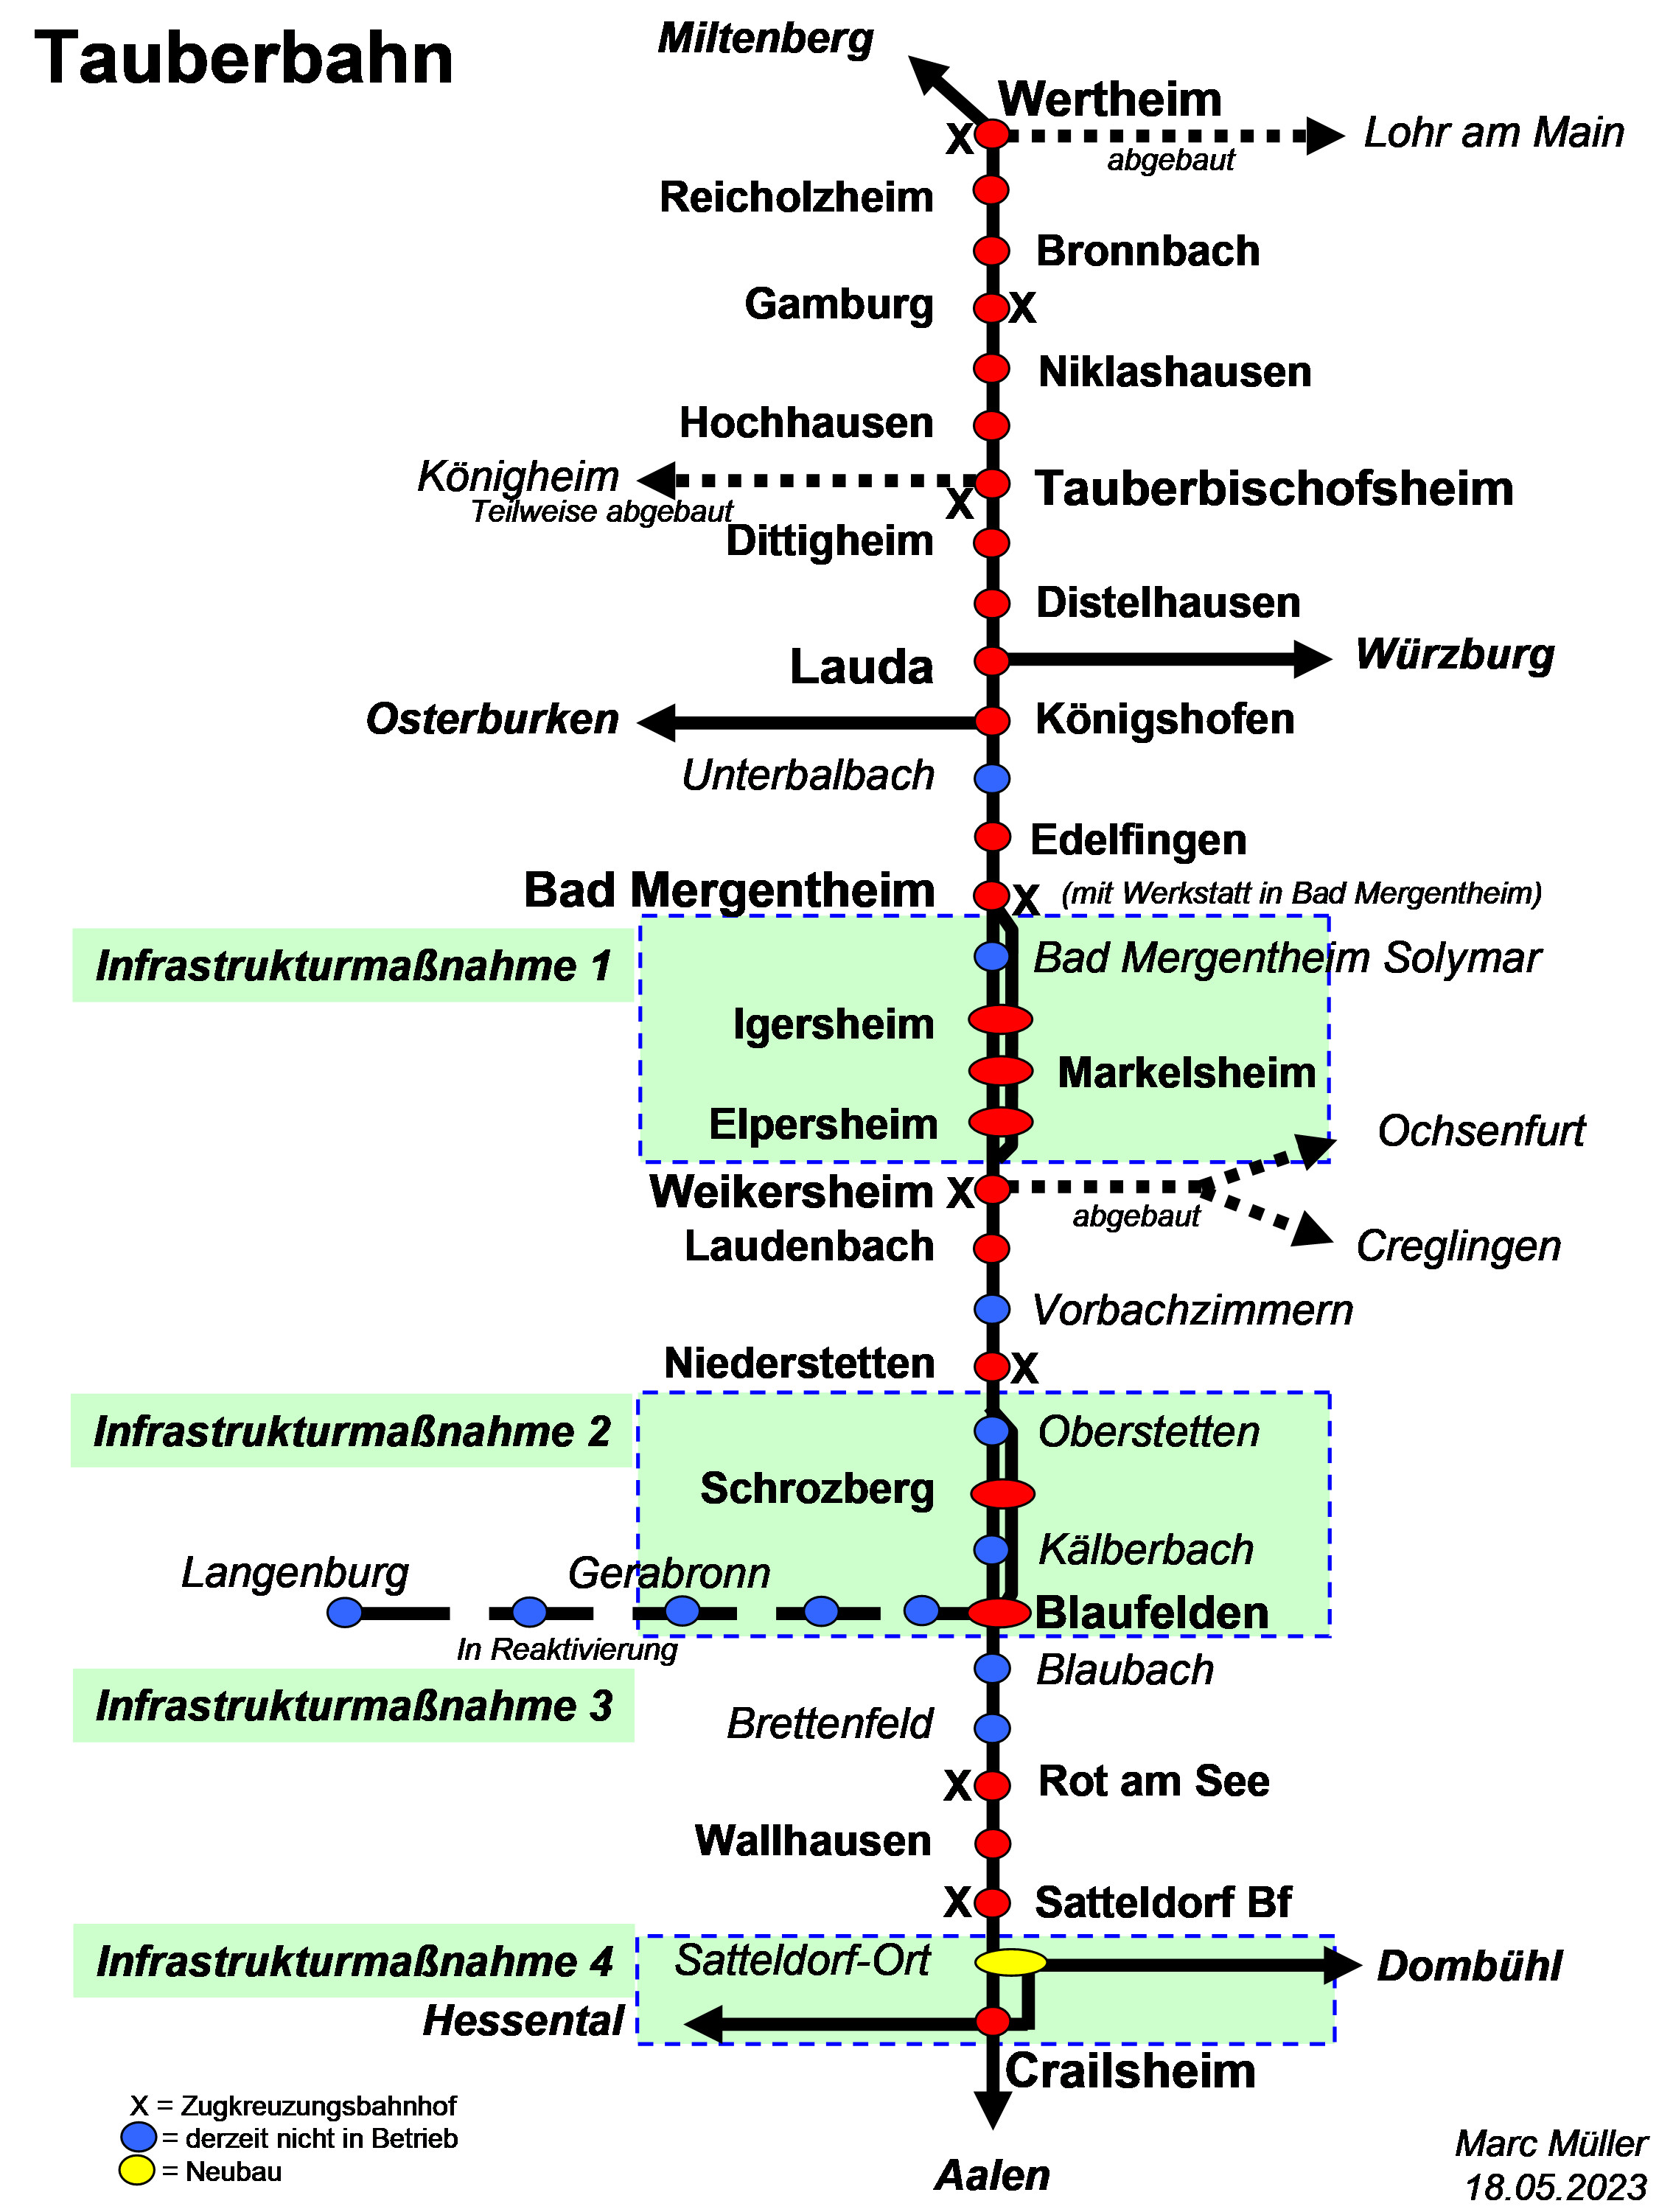 Vorschläge zur Verbesserung der Infrastruktur auf der Tauberbahn